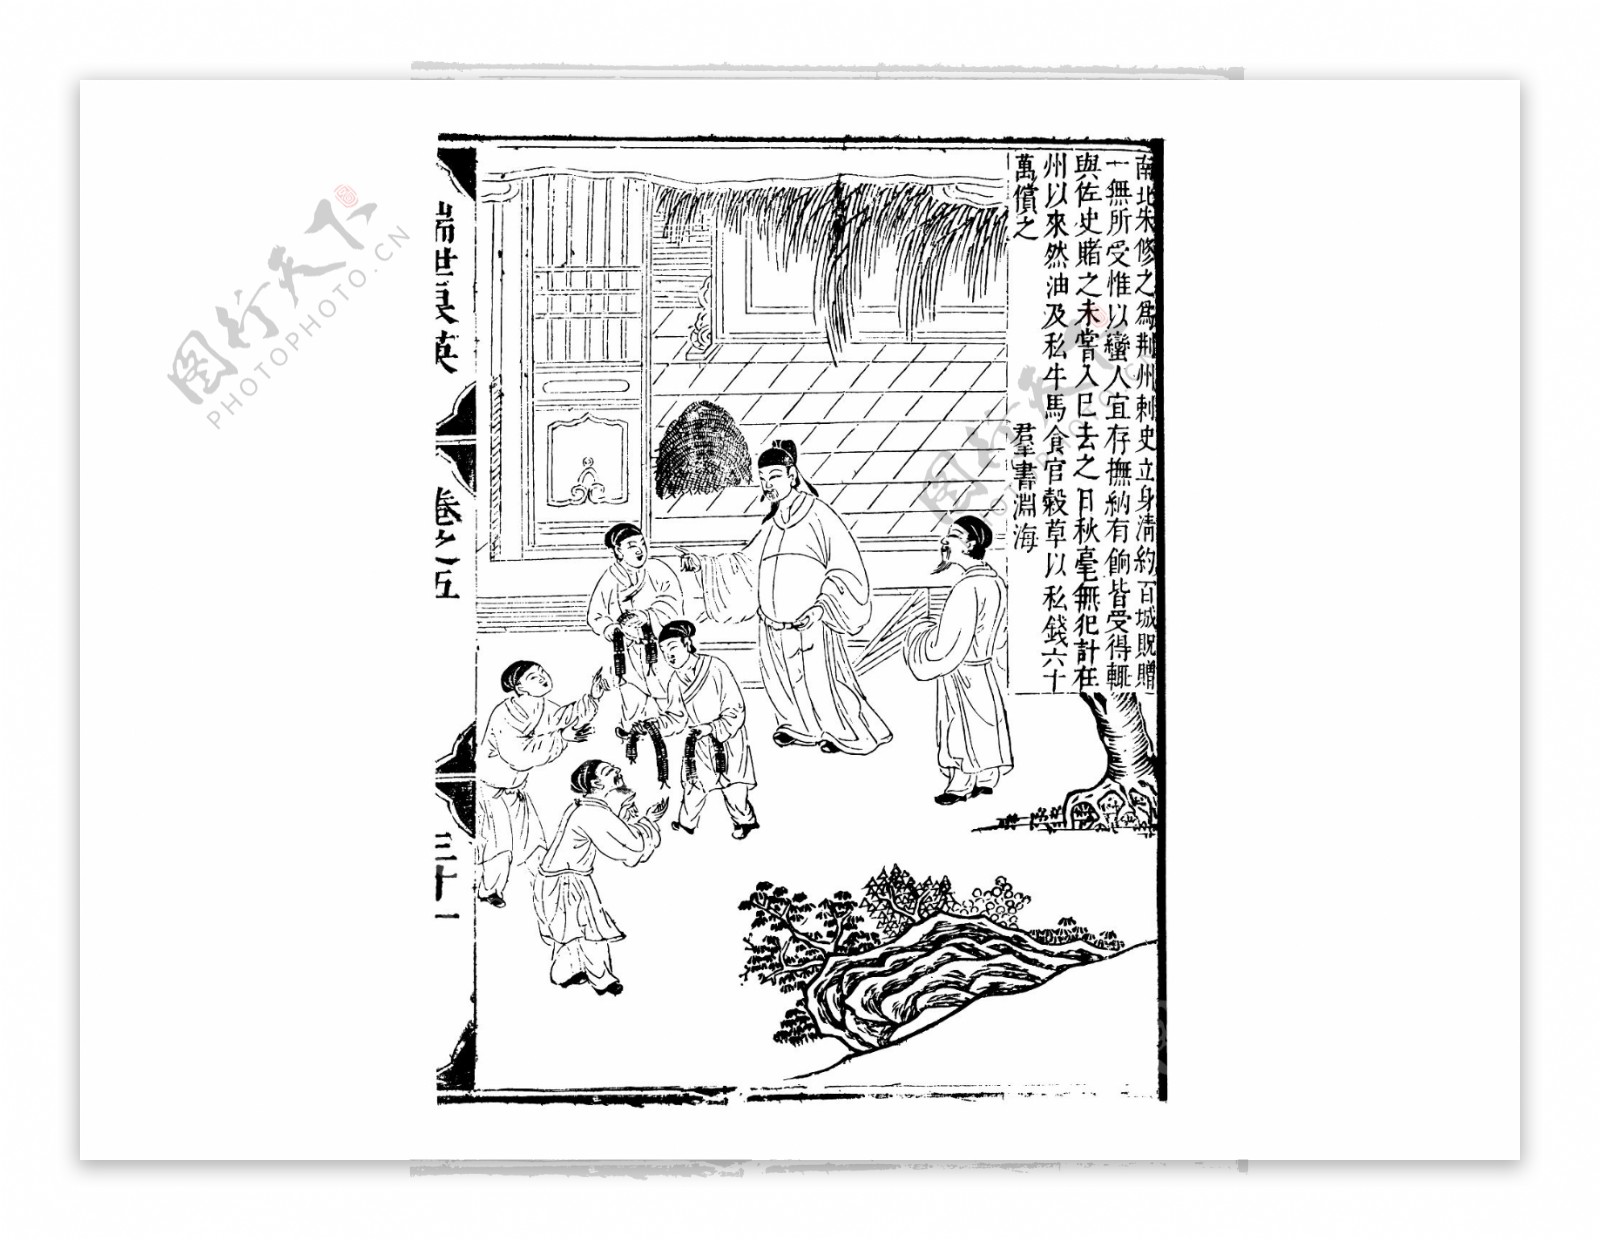 中华艺术绘画古人物生活线稿素材16